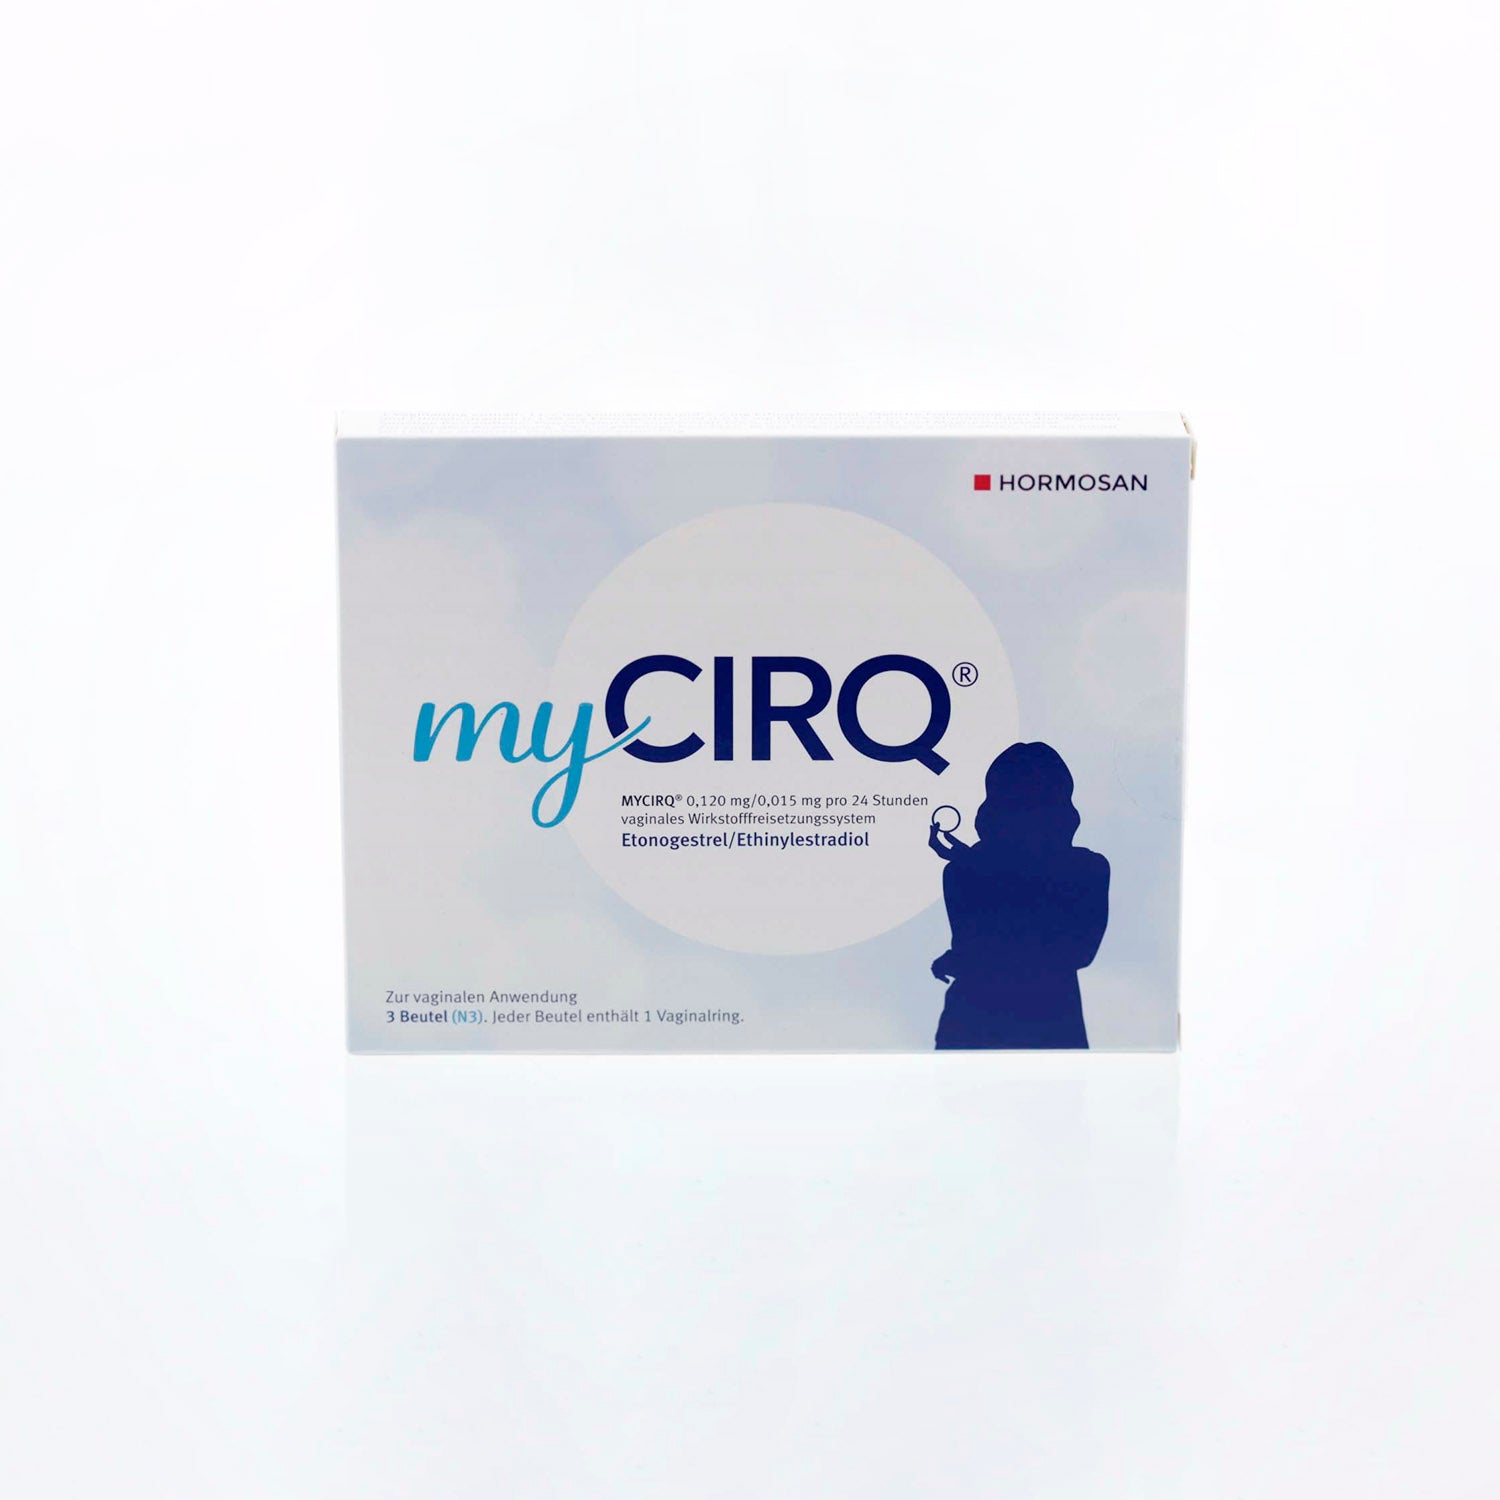 MYCIRQ® 0.120 mg/0.015 mg pro 24 Stunden vaginales Wirkstofffreisetzungssystem